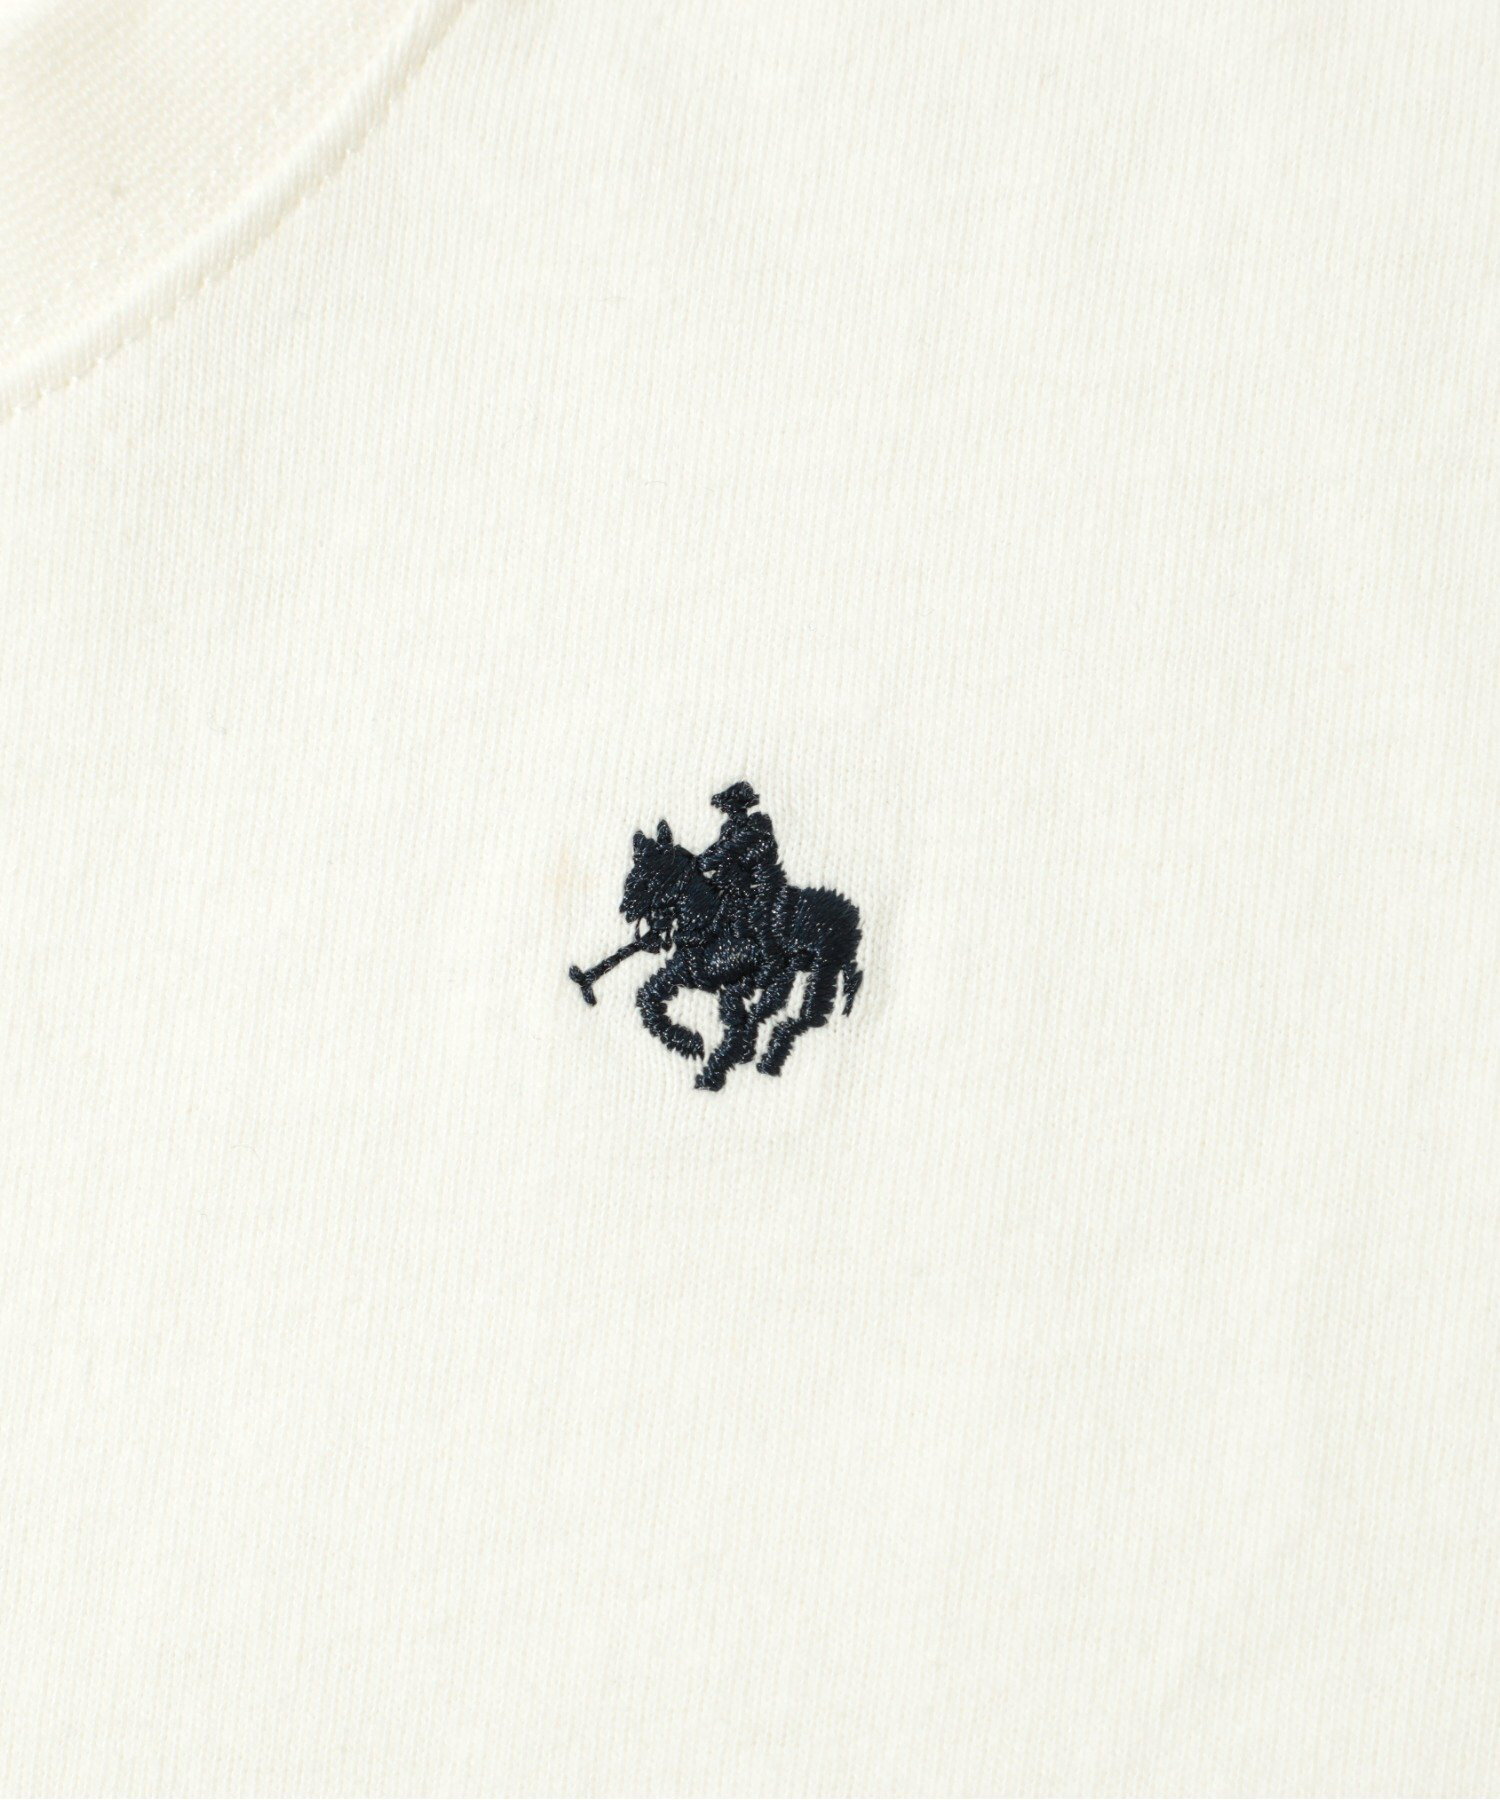 POLO BCS/【SETUP7別注】US Cotton oversize embroidery Tee USAコットンオーバーサイズPOLOプリントTシャツ カジュアル ユニセックス 半袖 Tシャツ ポロビーシーエス